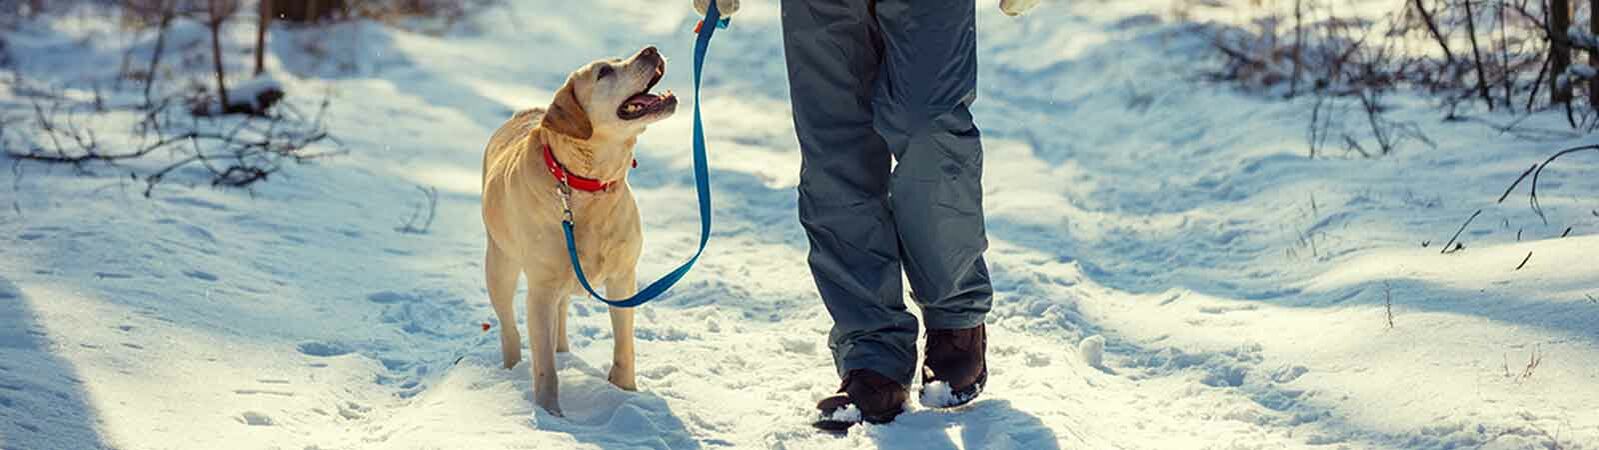 Ein Mann spaziert mit seinem Hund im Wald durch den Schnee.